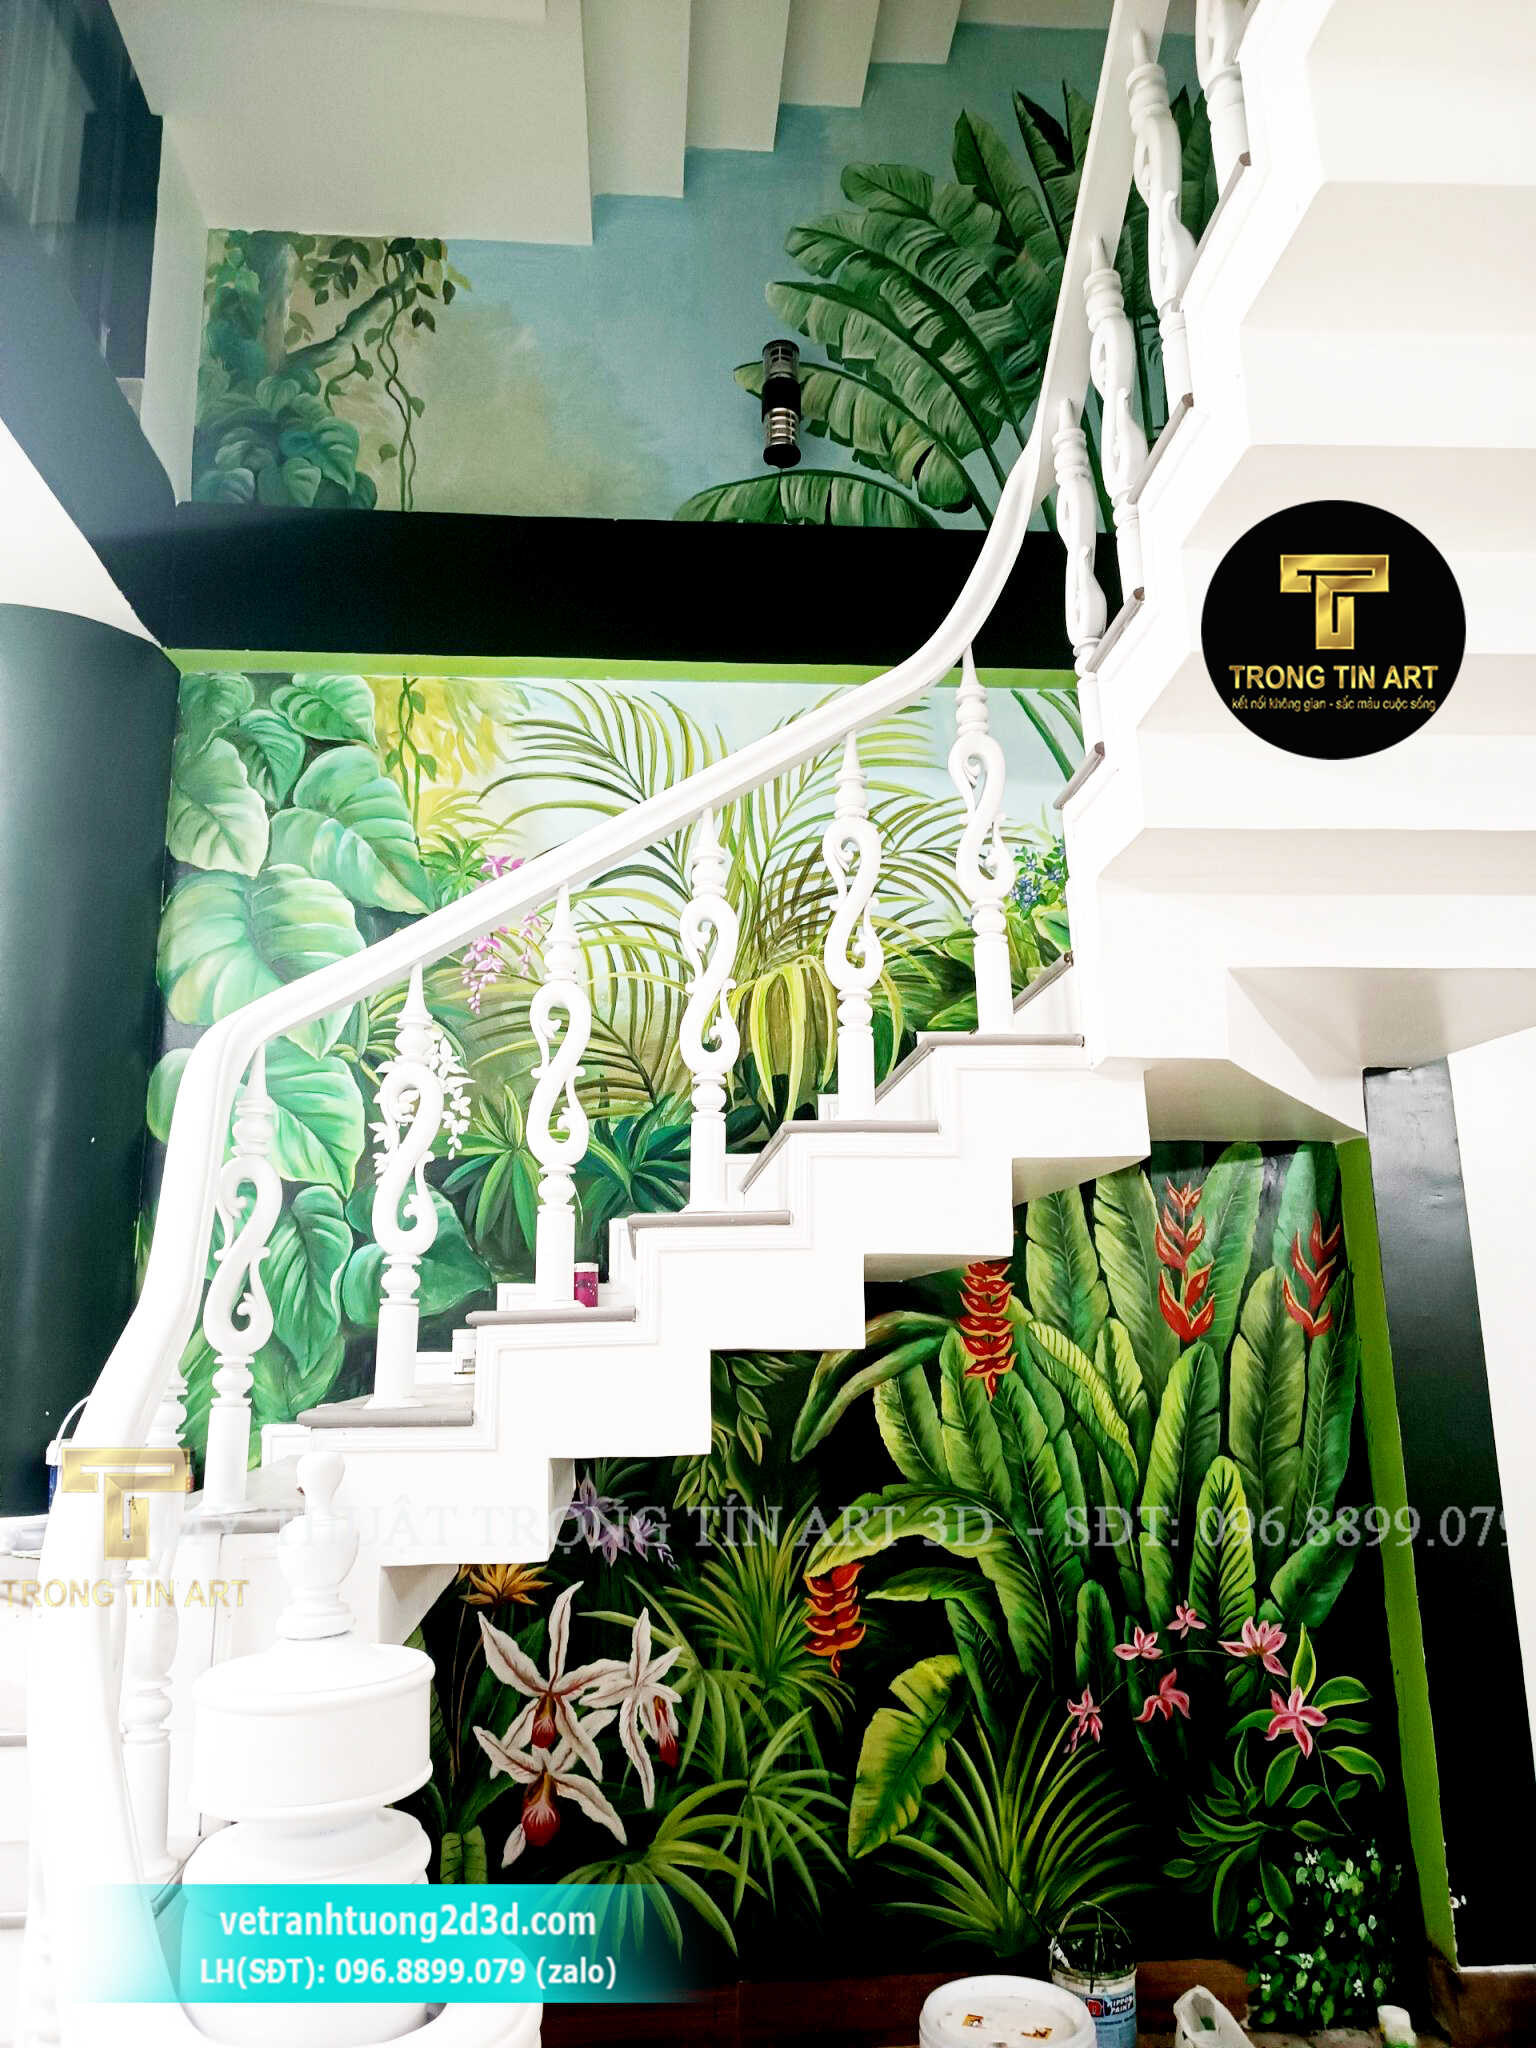 Vẽ tranh cầu thang,vẽ tranh tường cầu thang quán cafe trà sữa tại biên hoà đồng nai,vẽ tranh tường quán ăn,tranh hoa lá nhiệt đới,tropical